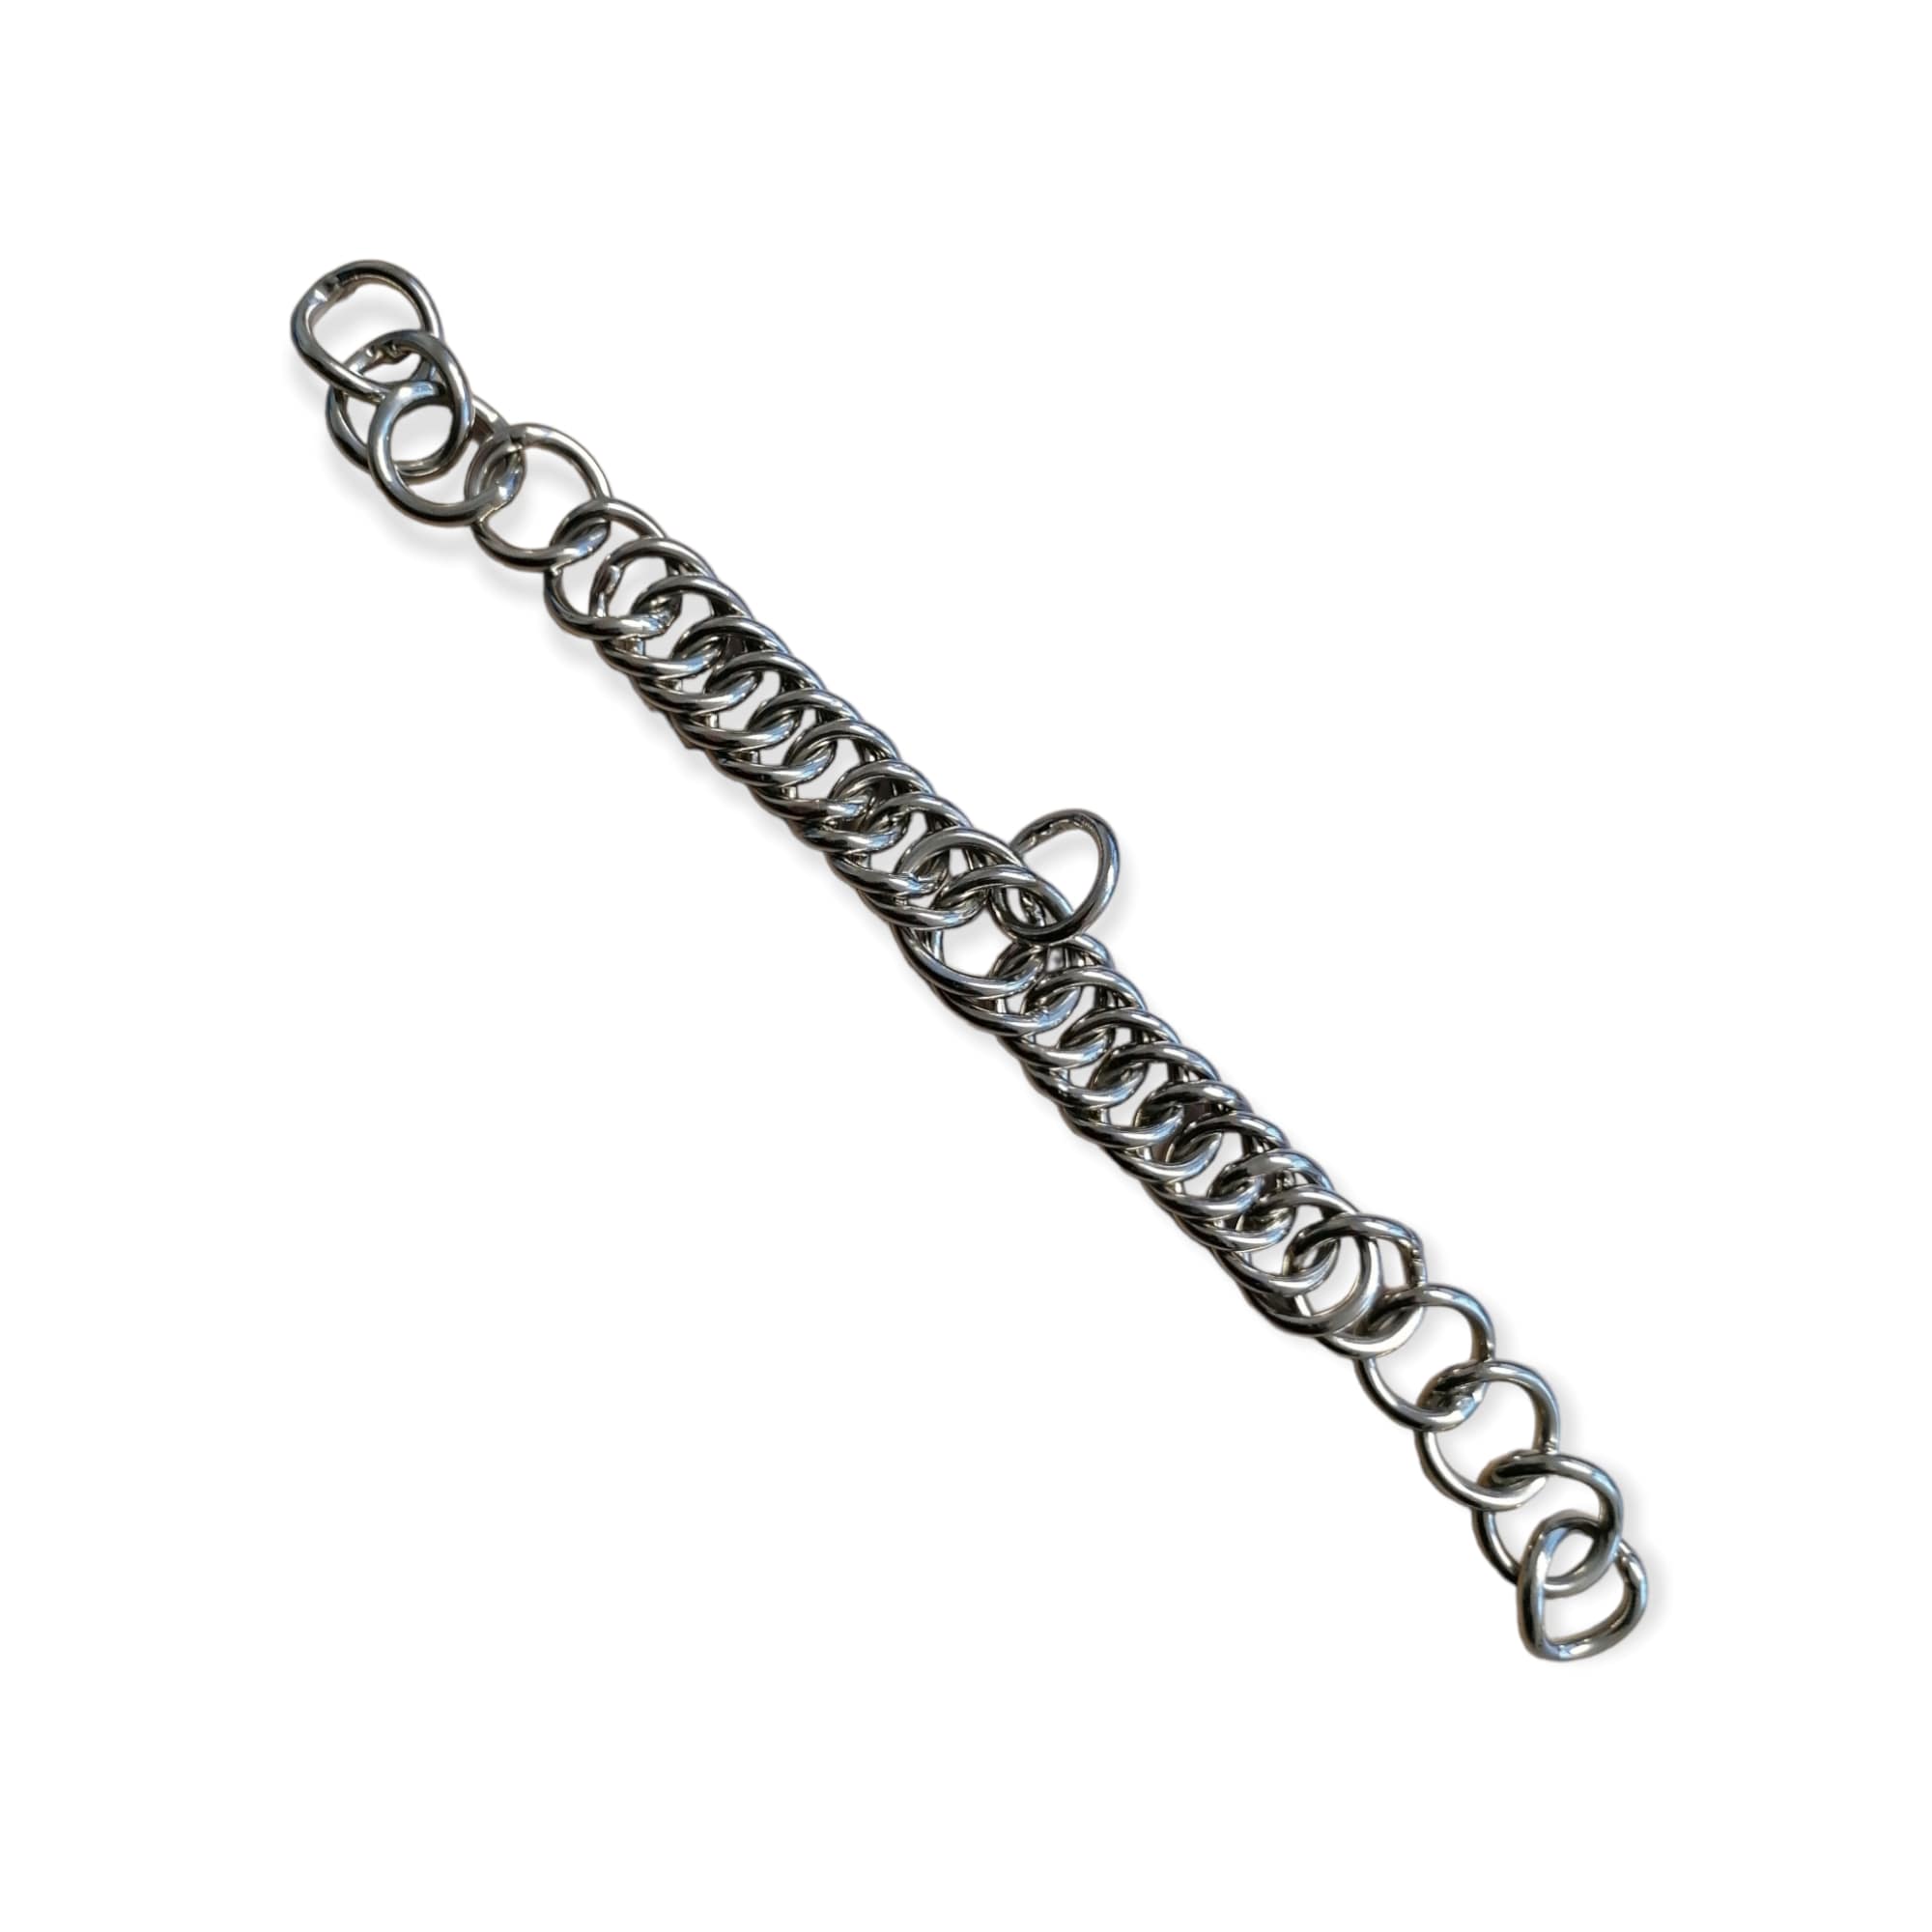 Cheeck chain - 27cm